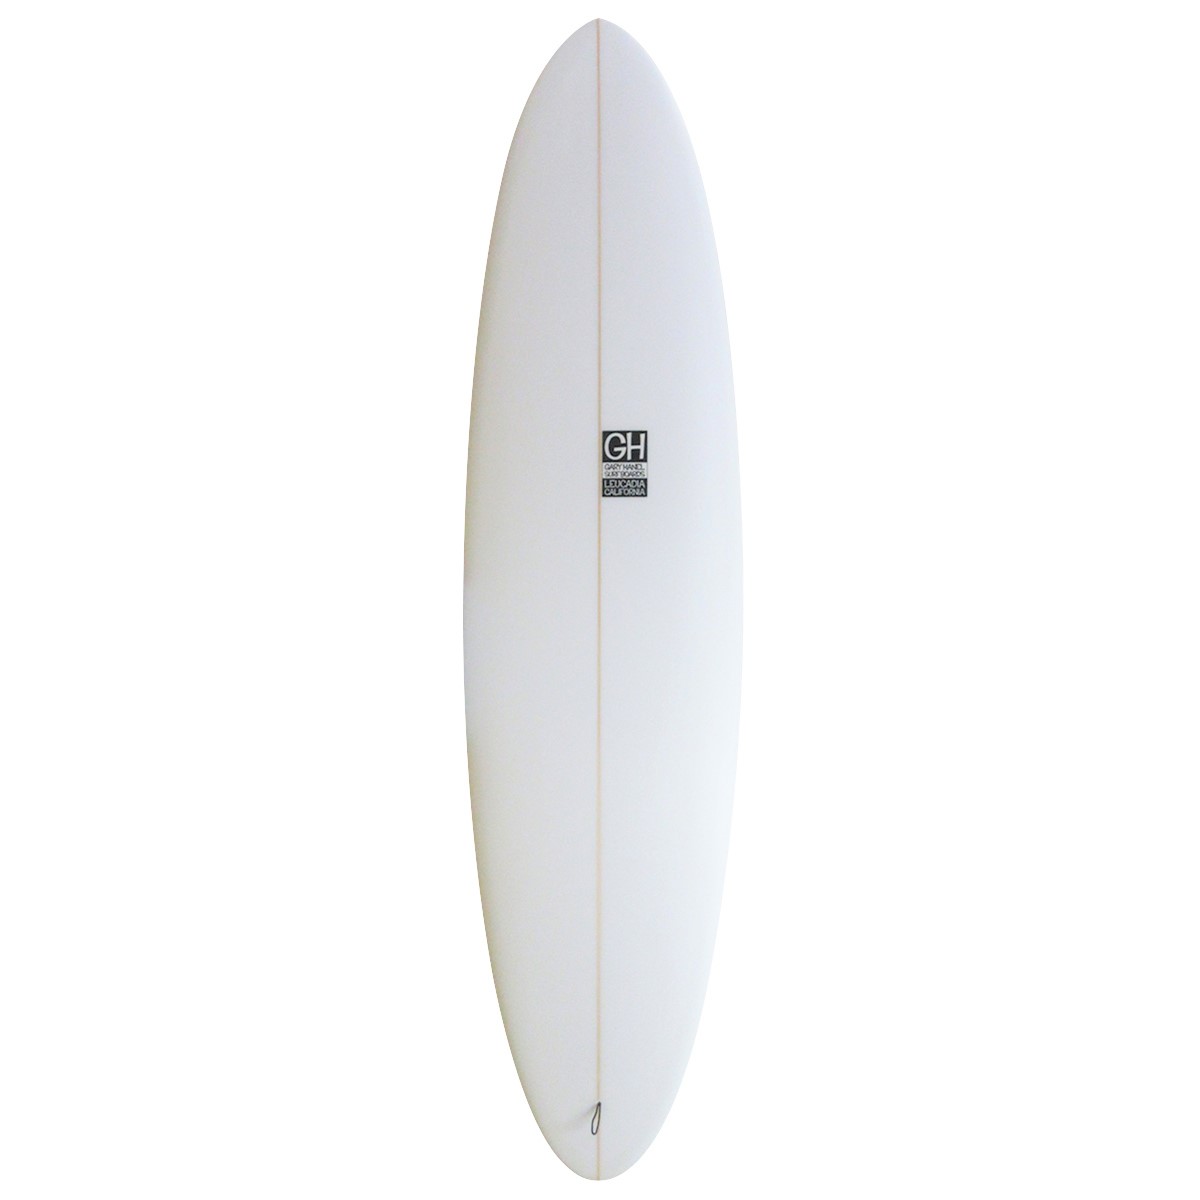 Gary Hanel Surfboards : Bonzer Egg 7'2"